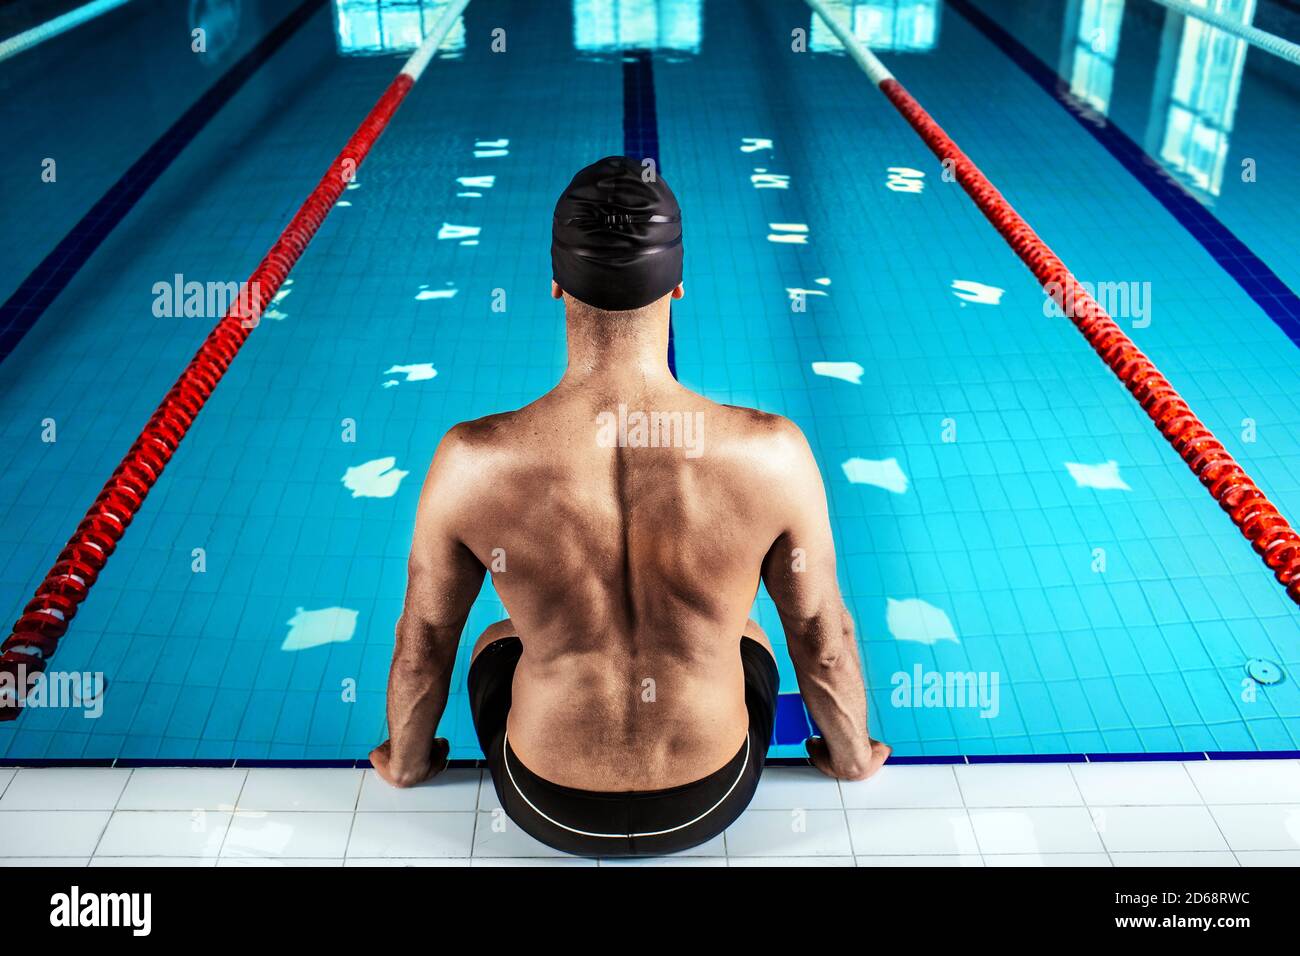 Nuotatore seduto a bordo piscina, vista sul retro. Nuotatore professionista vicino alla piscina, forte contrasto Foto Stock